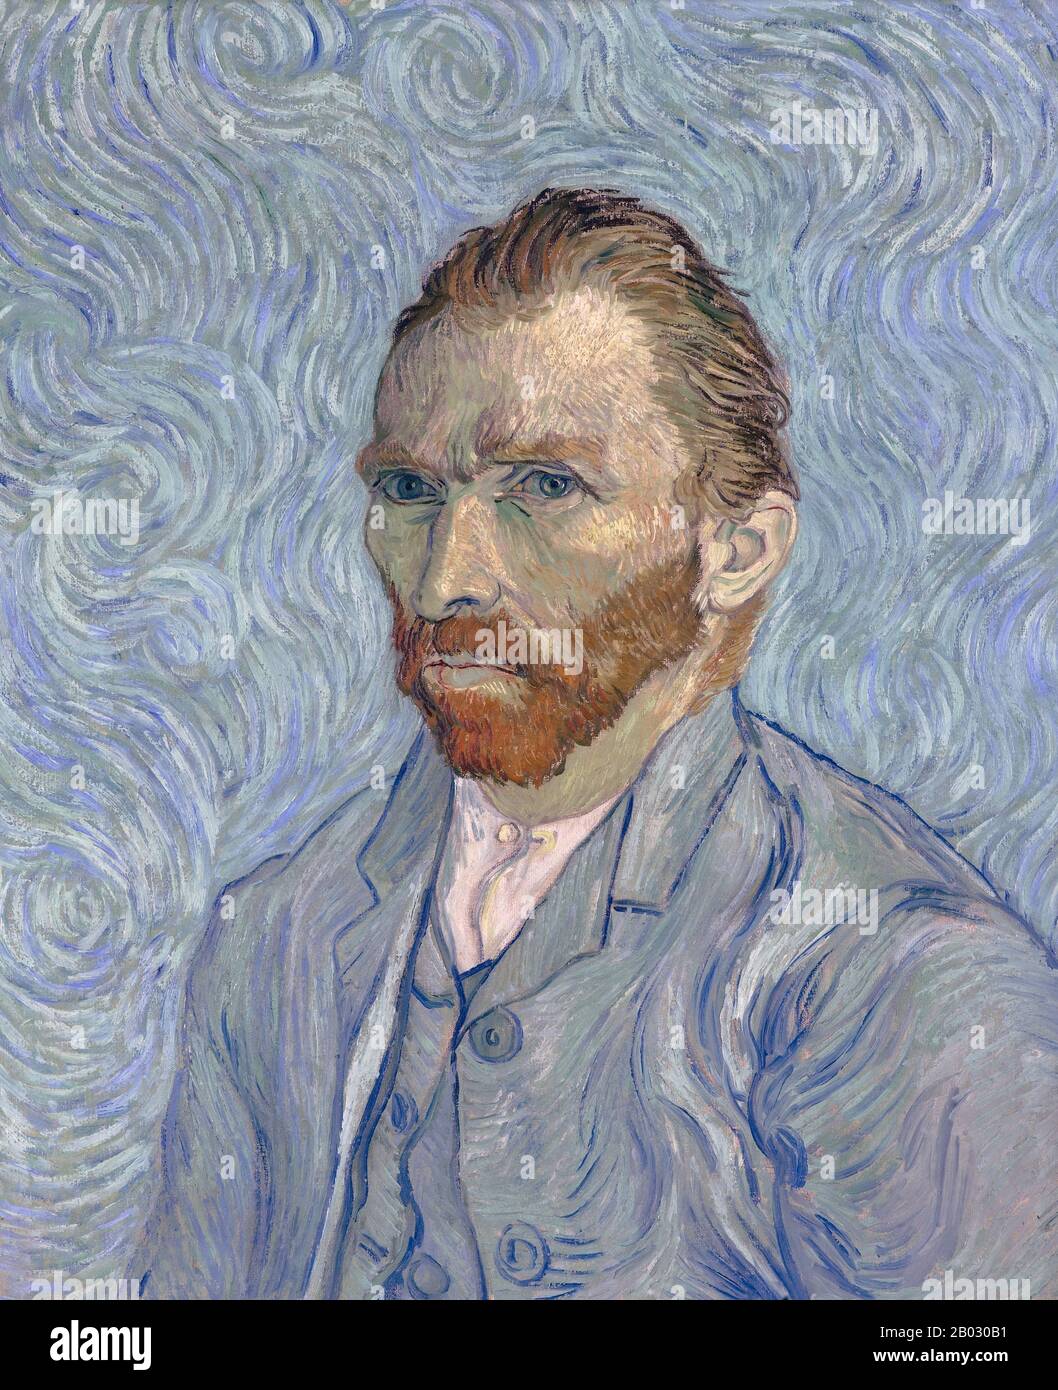 Vincent Willem van Gogh (30 mars 1853 – 29 juillet 1890) était peintre post-impressionniste. Il était un artiste néerlandais dont l'œuvre avait une influence considérable sur l'art du XXe siècle. Sa production comprend des portraits, des autoportraits, des paysages et encore des vies de cyprès, de champs de blé et de tournesols. Il a attiré comme enfant, mais n'a pas peint jusqu'à ses années vingt-dix tardives; il a accompli beaucoup de ses œuvres les plus connues au cours des deux dernières années de sa vie. En un peu plus d'une décennie, il a produit plus de 2 100 œuvres d'art, dont 860 peintures à l'huile et plus de 1 300 aquarelles, dessins, croquis et imprimés. Cette peinture Banque D'Images